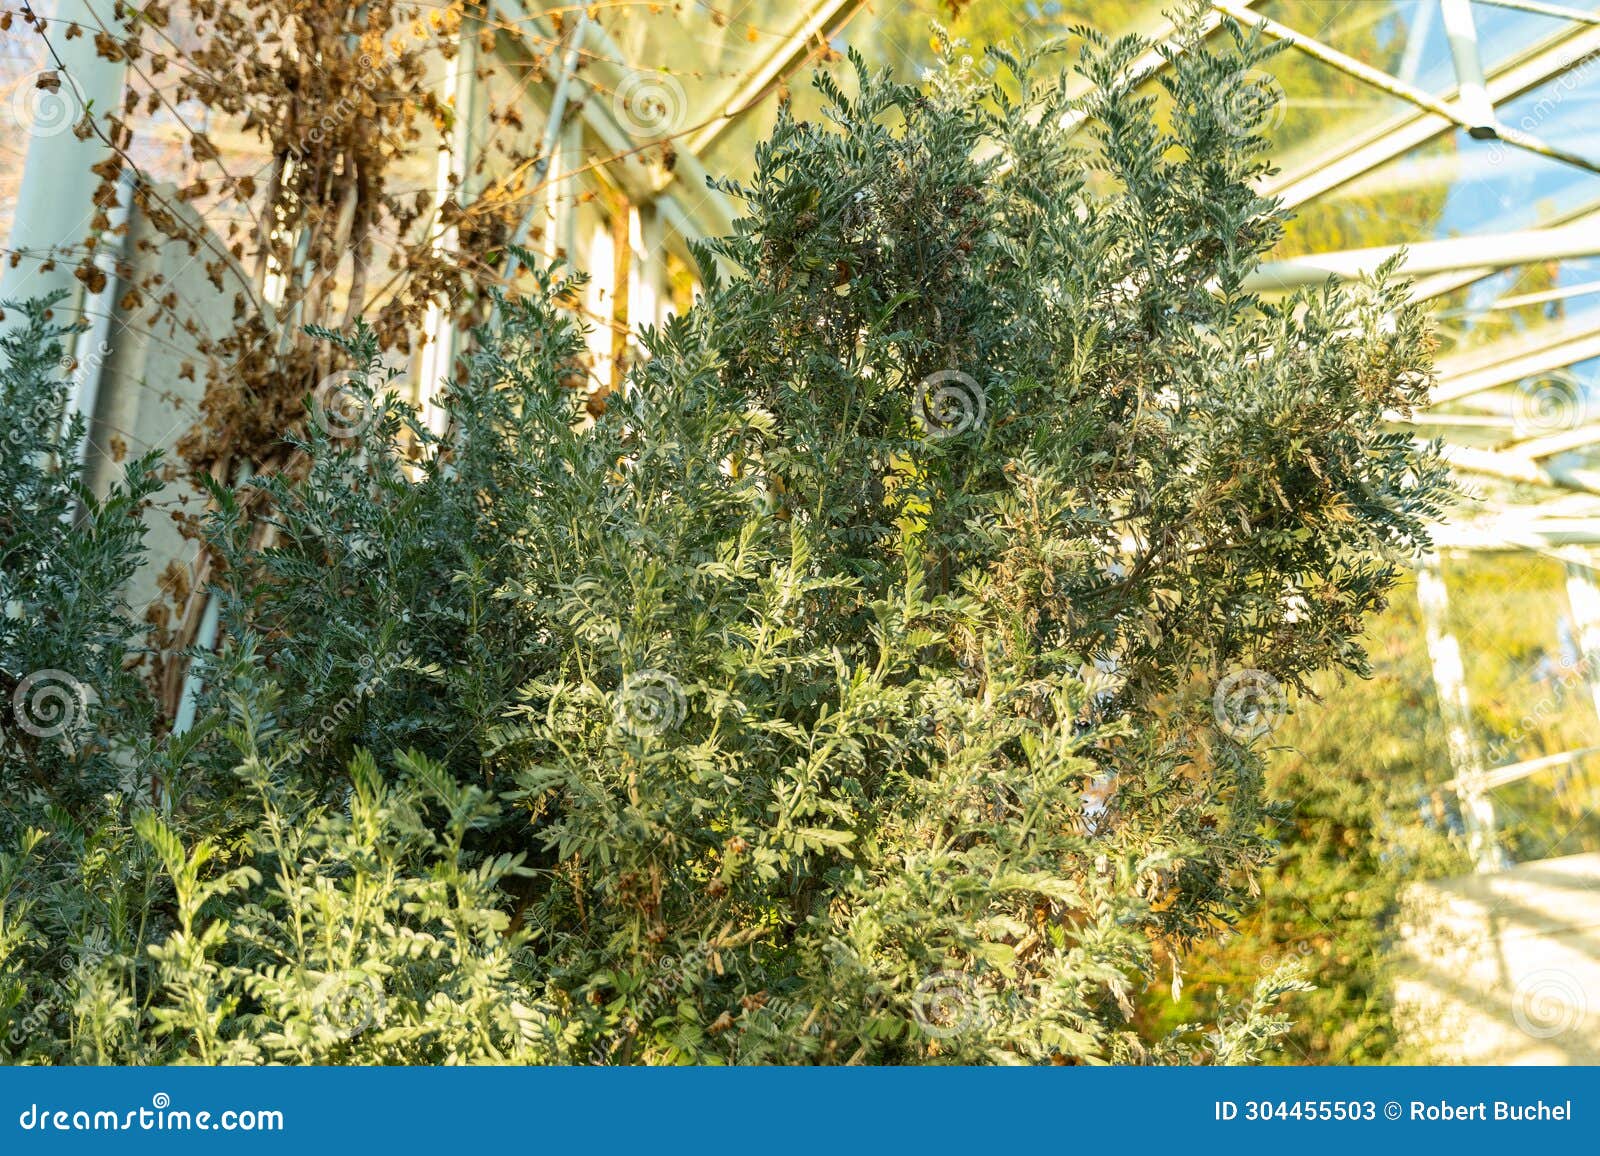 anthyllis barba-jovis plant in saint gallen in switzerland